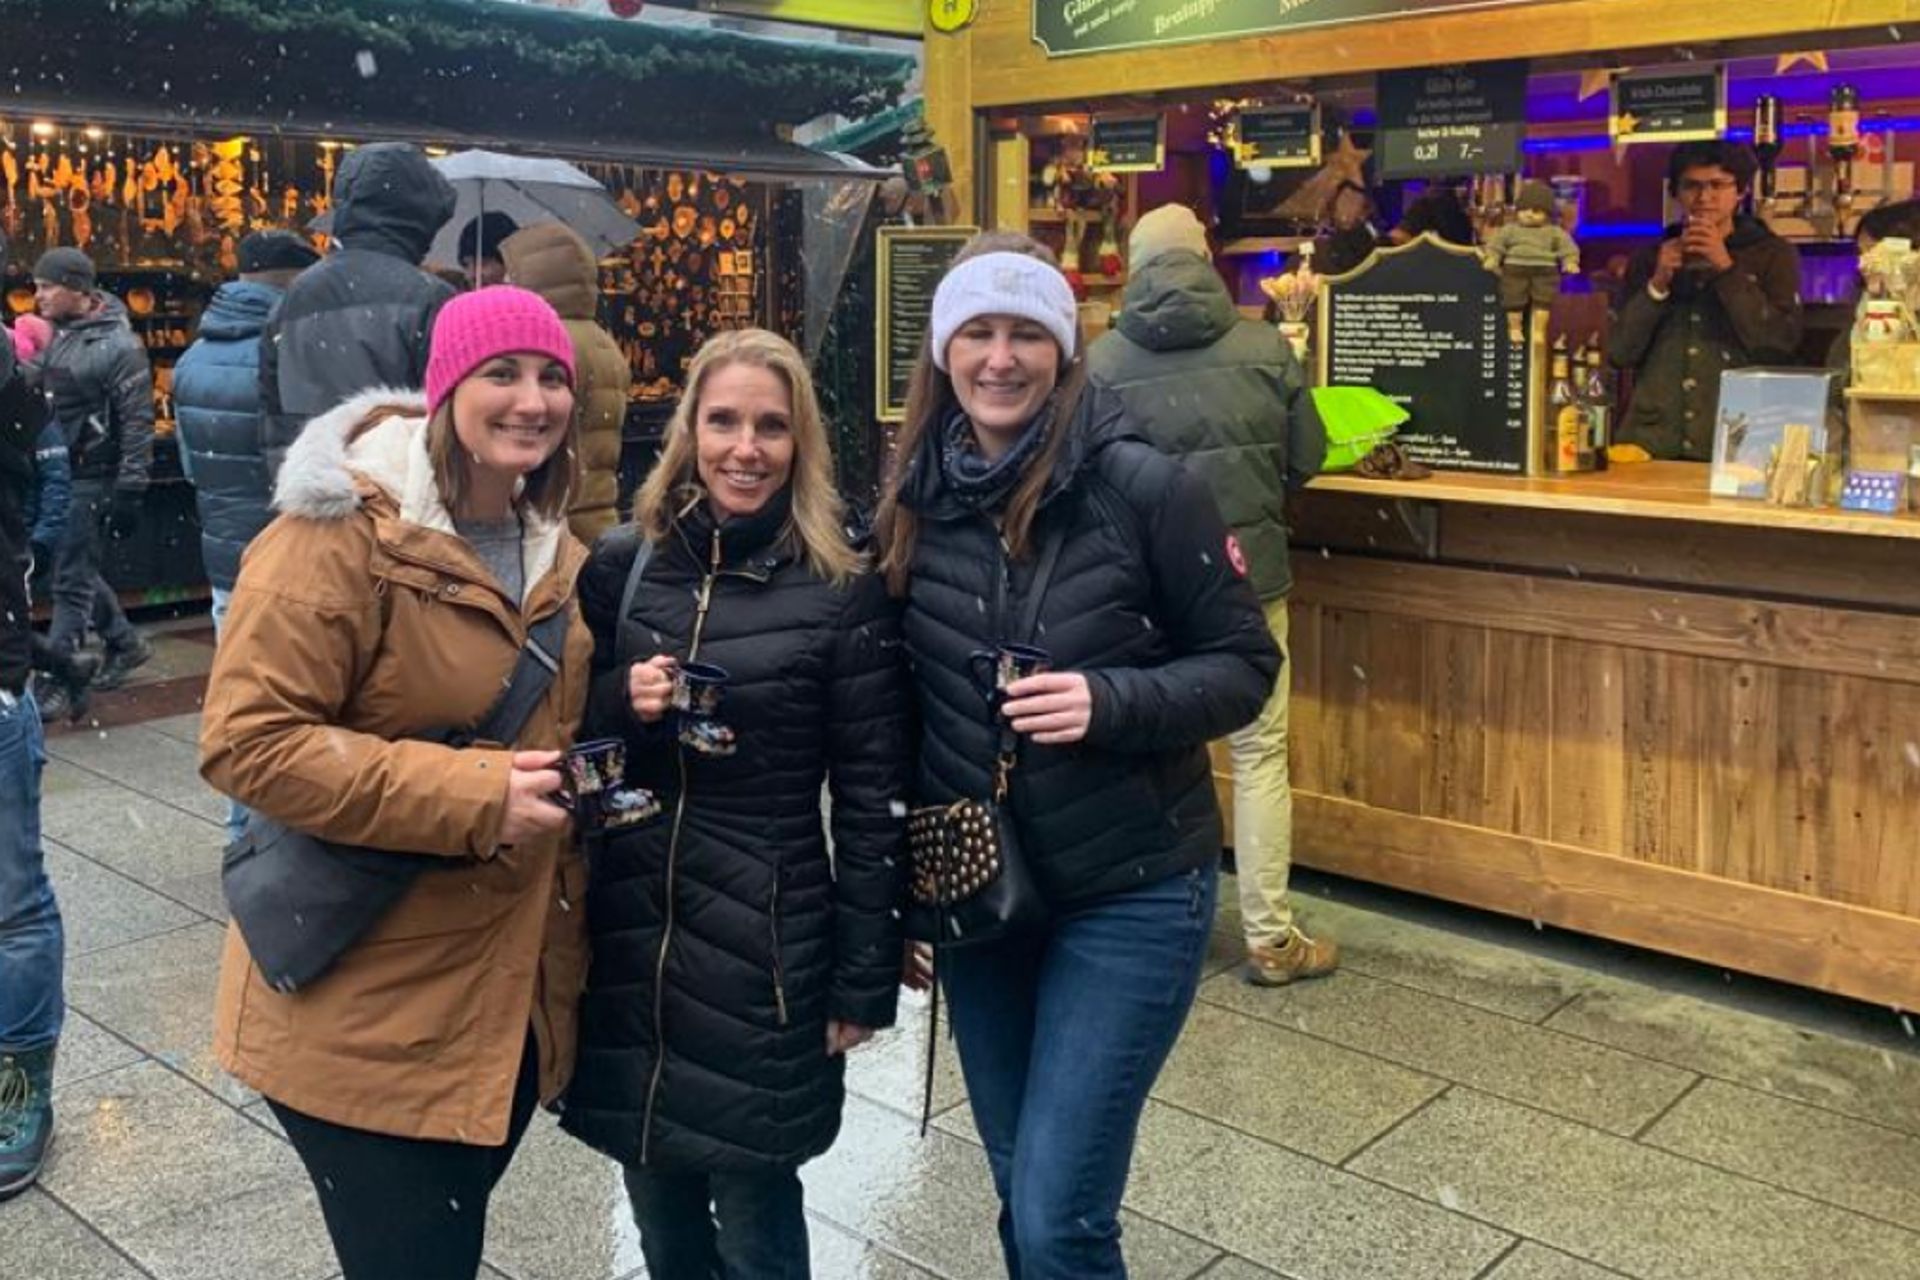 Das erste Wochenende in München: Darcy (M.) besucht zusammen mit den Navistar Expats Anna Reuter und Alyssa Powers den Weihnachtsmarkt auf dem Marienplatz.